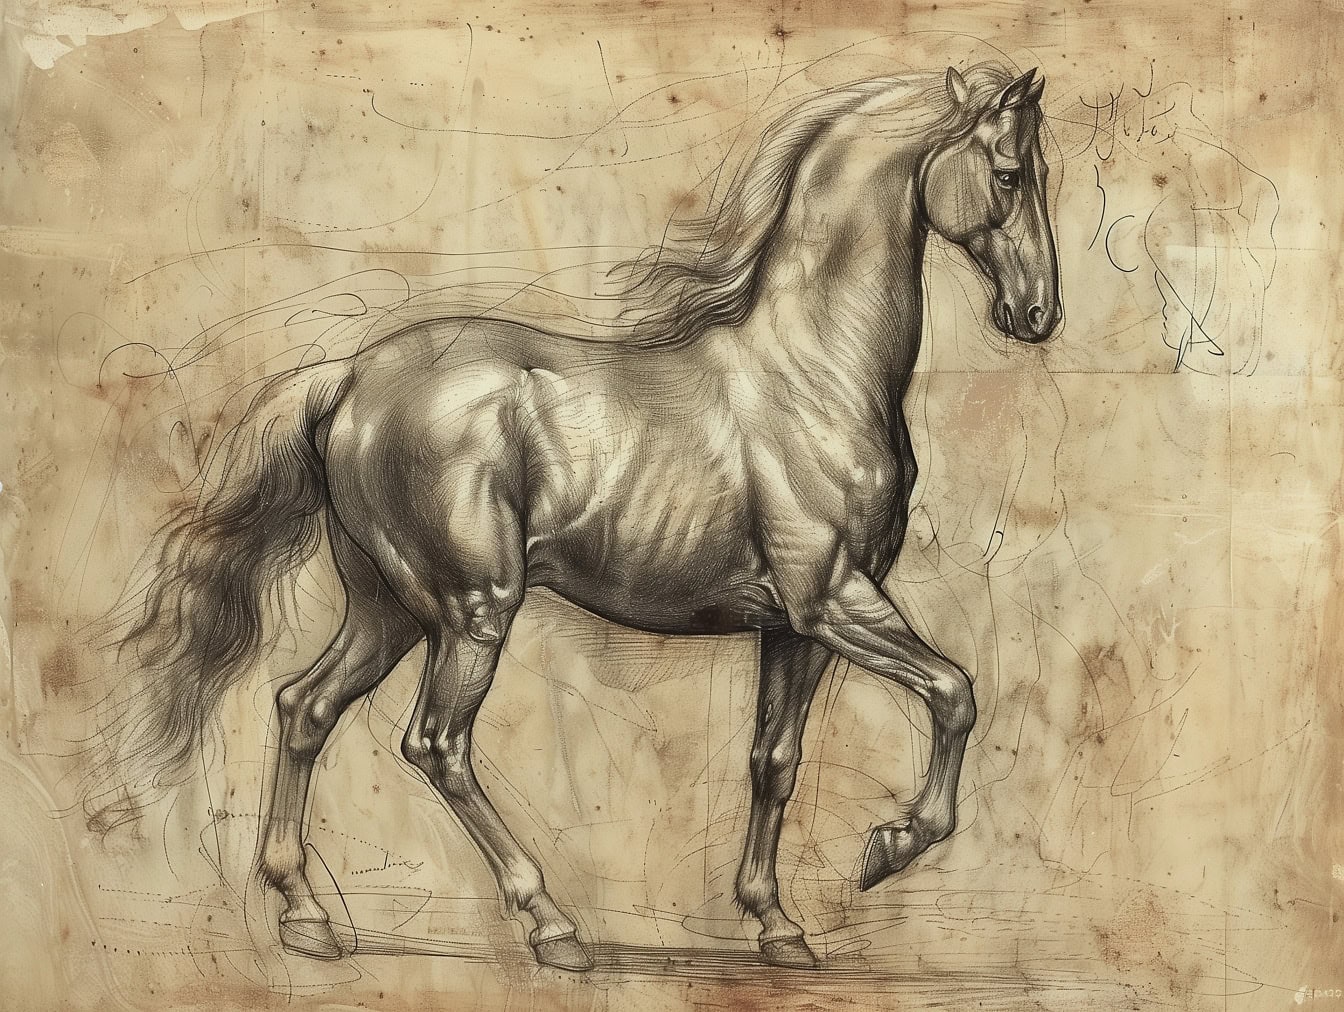 Grafiittiluonnos Lipizzaner-hevosesta, jossa on mukava varjostus keskiaikaisen taiteellisen piirustuksen tyyliin